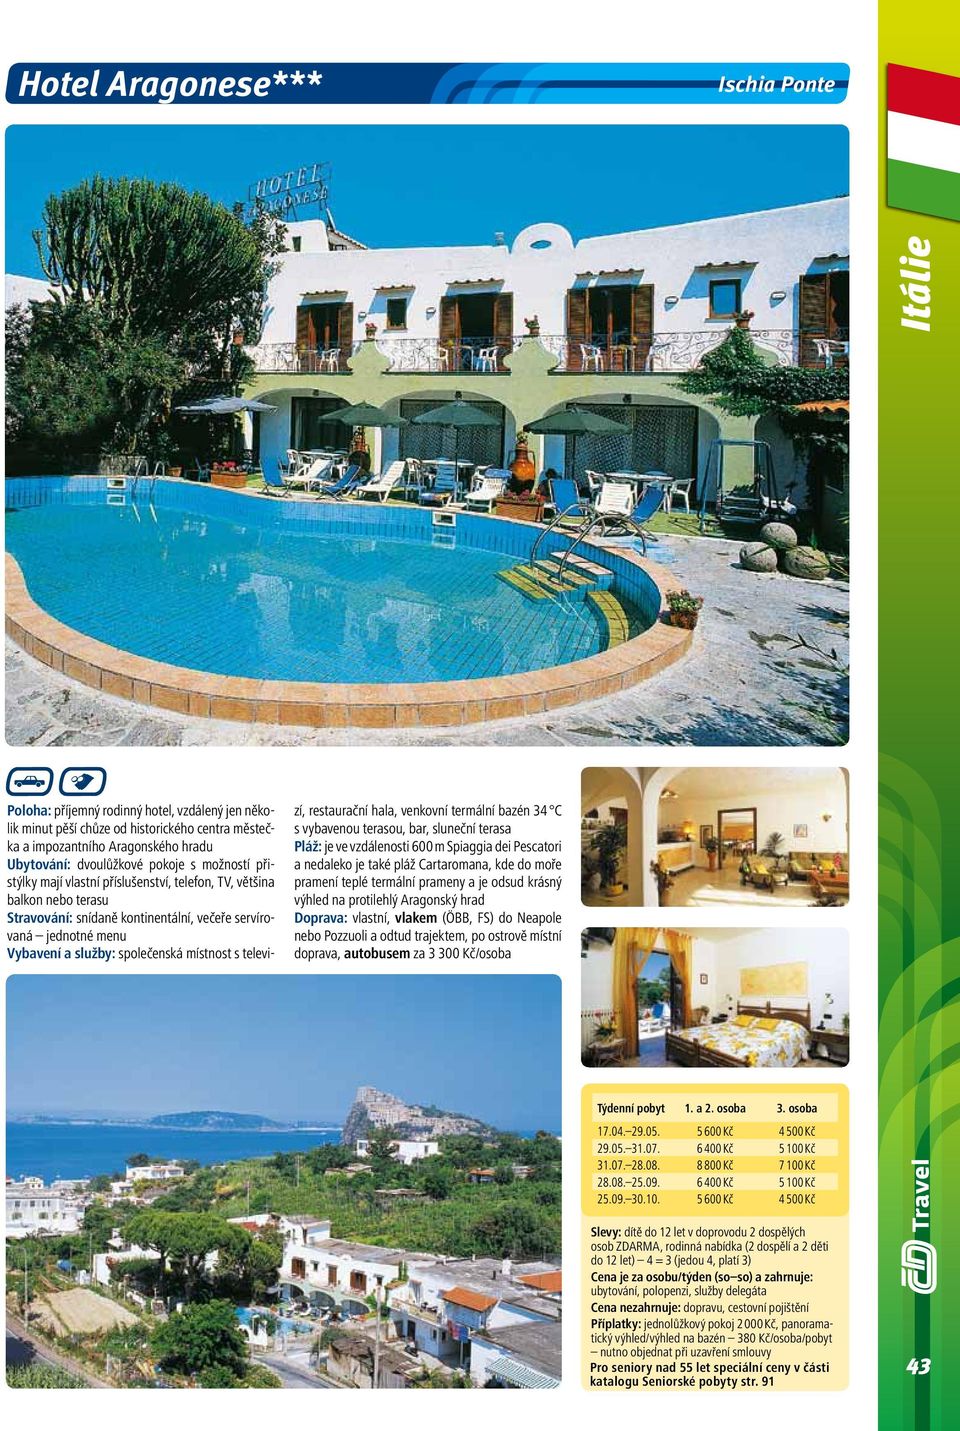 místnost s televizí, restaurační hala, venkovní termální bazén 34 C s vybavenou terasou, bar, sluneční terasa Pláž: je ve vzdálenosti 600 m Spiaggia dei Pescatori a nedaleko je také pláž Cartaromana,